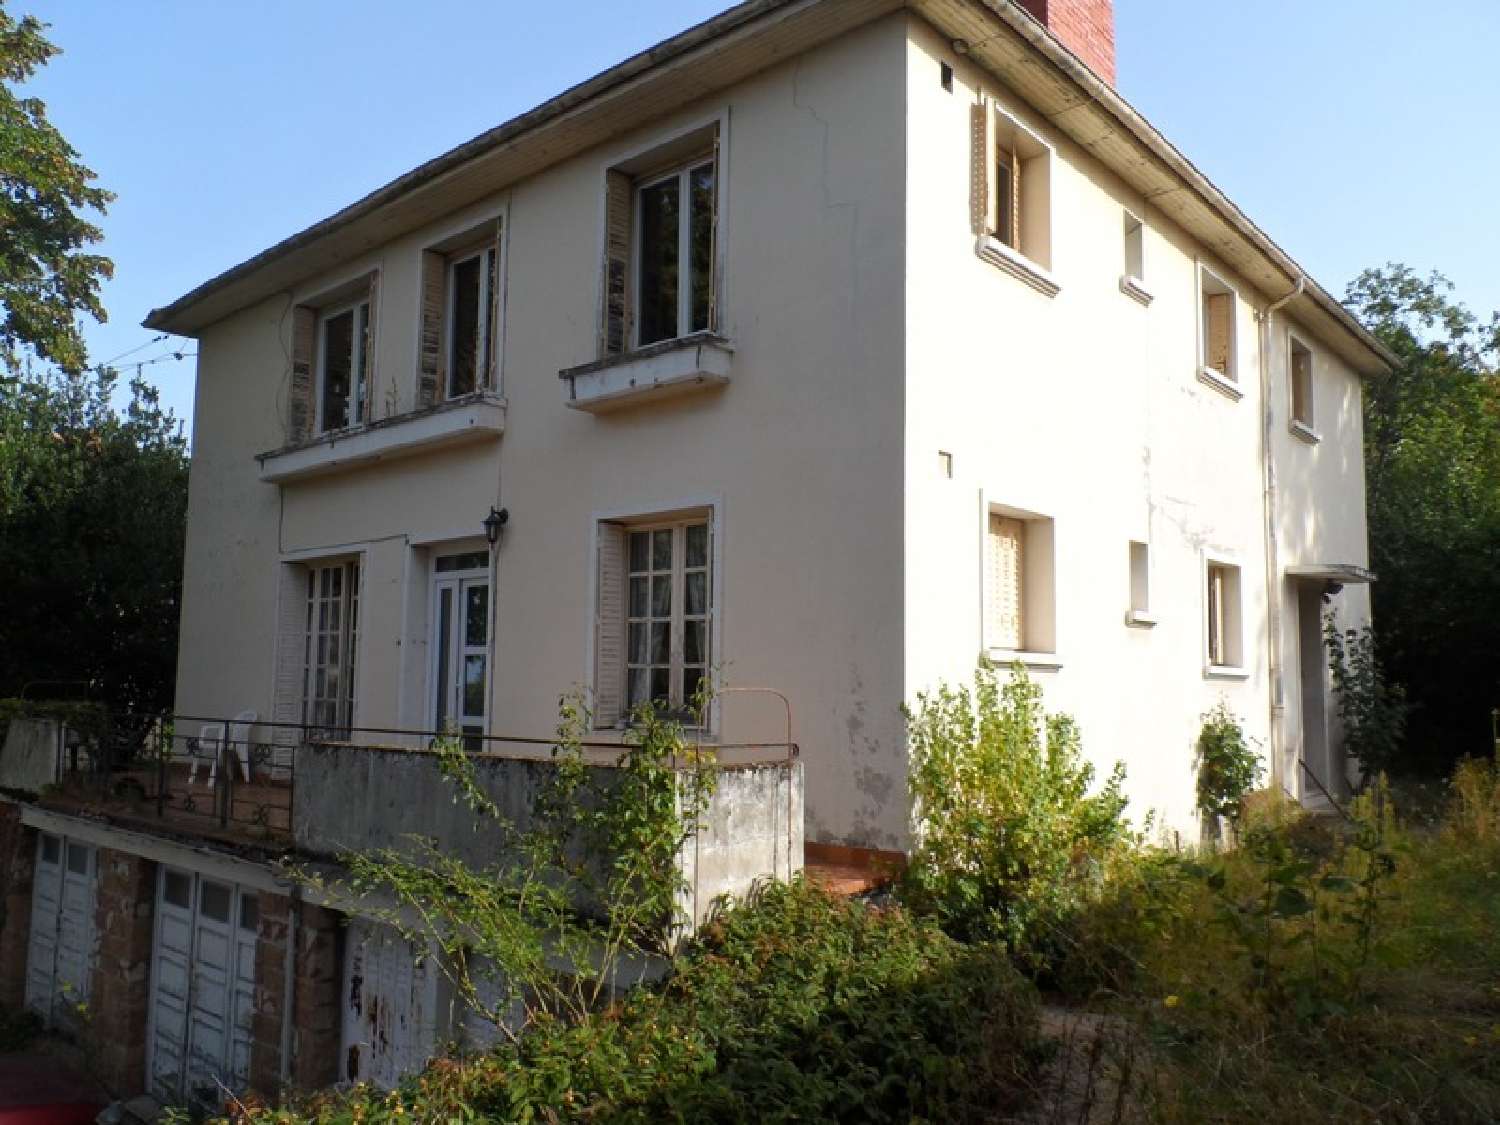  à vendre maison bourgeoise Néris-les-Bains Allier 1